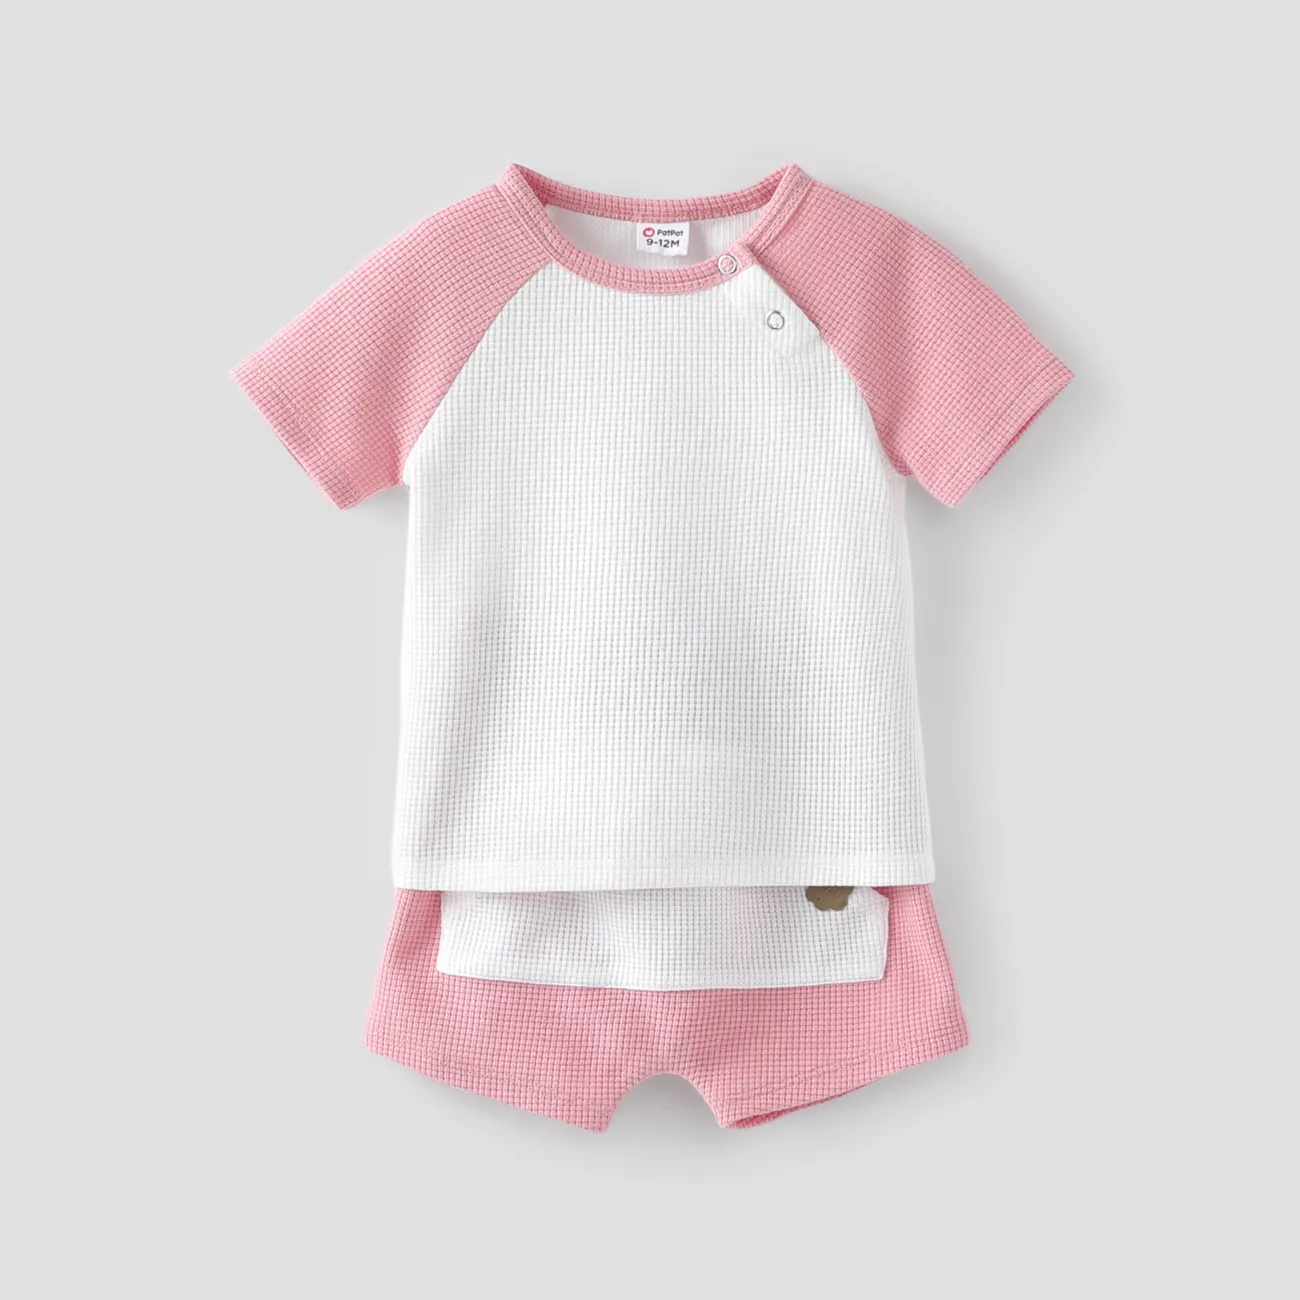 Baby Junge/Mädchen 2-teiliges einfarbiges T-Shirt und Shorts-Set  rosa big image 1